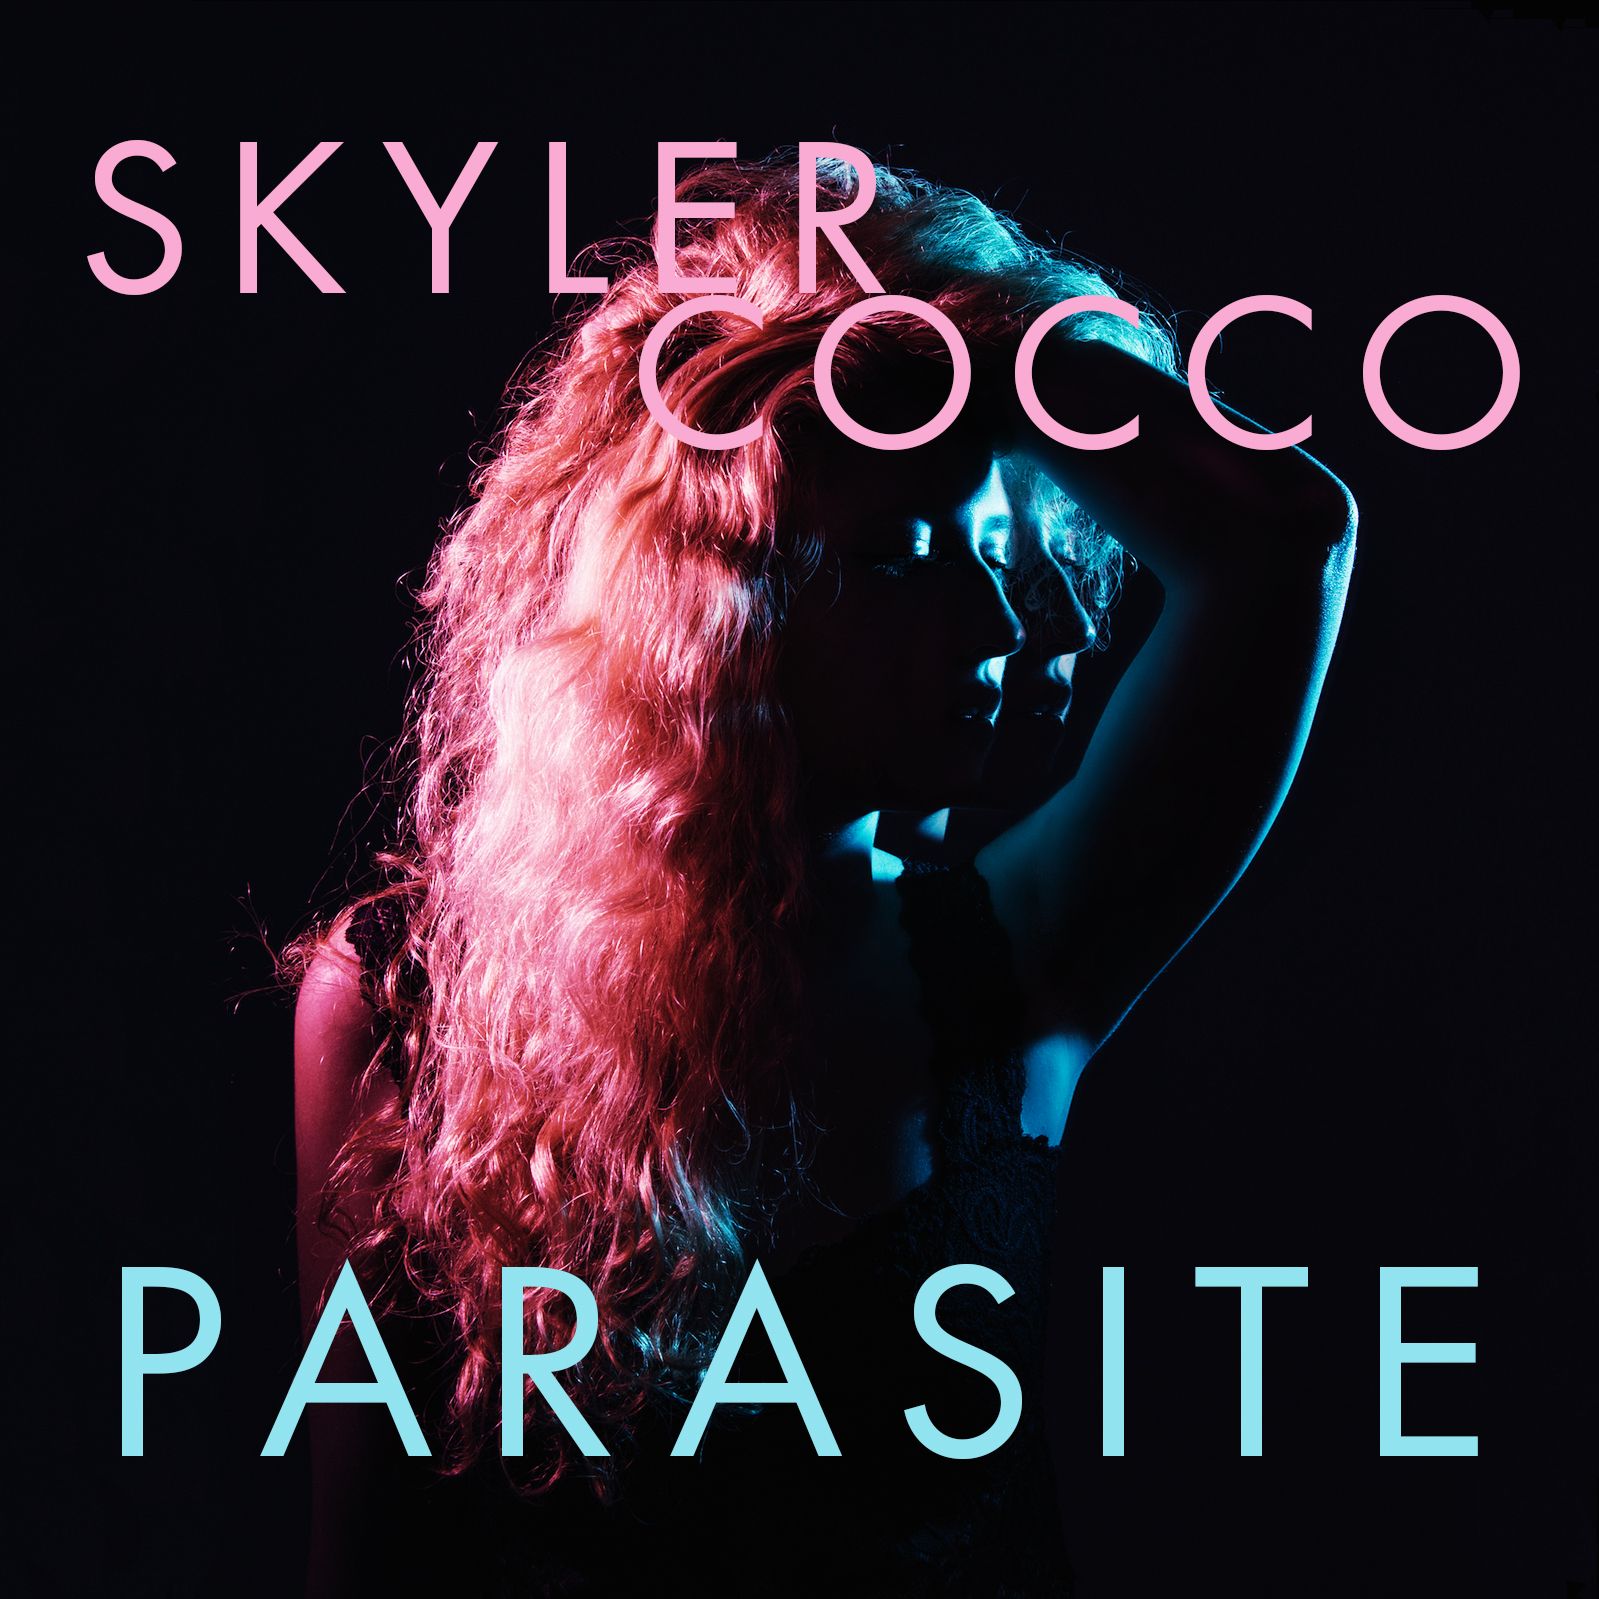 Skyler Cocco – “Parasite”